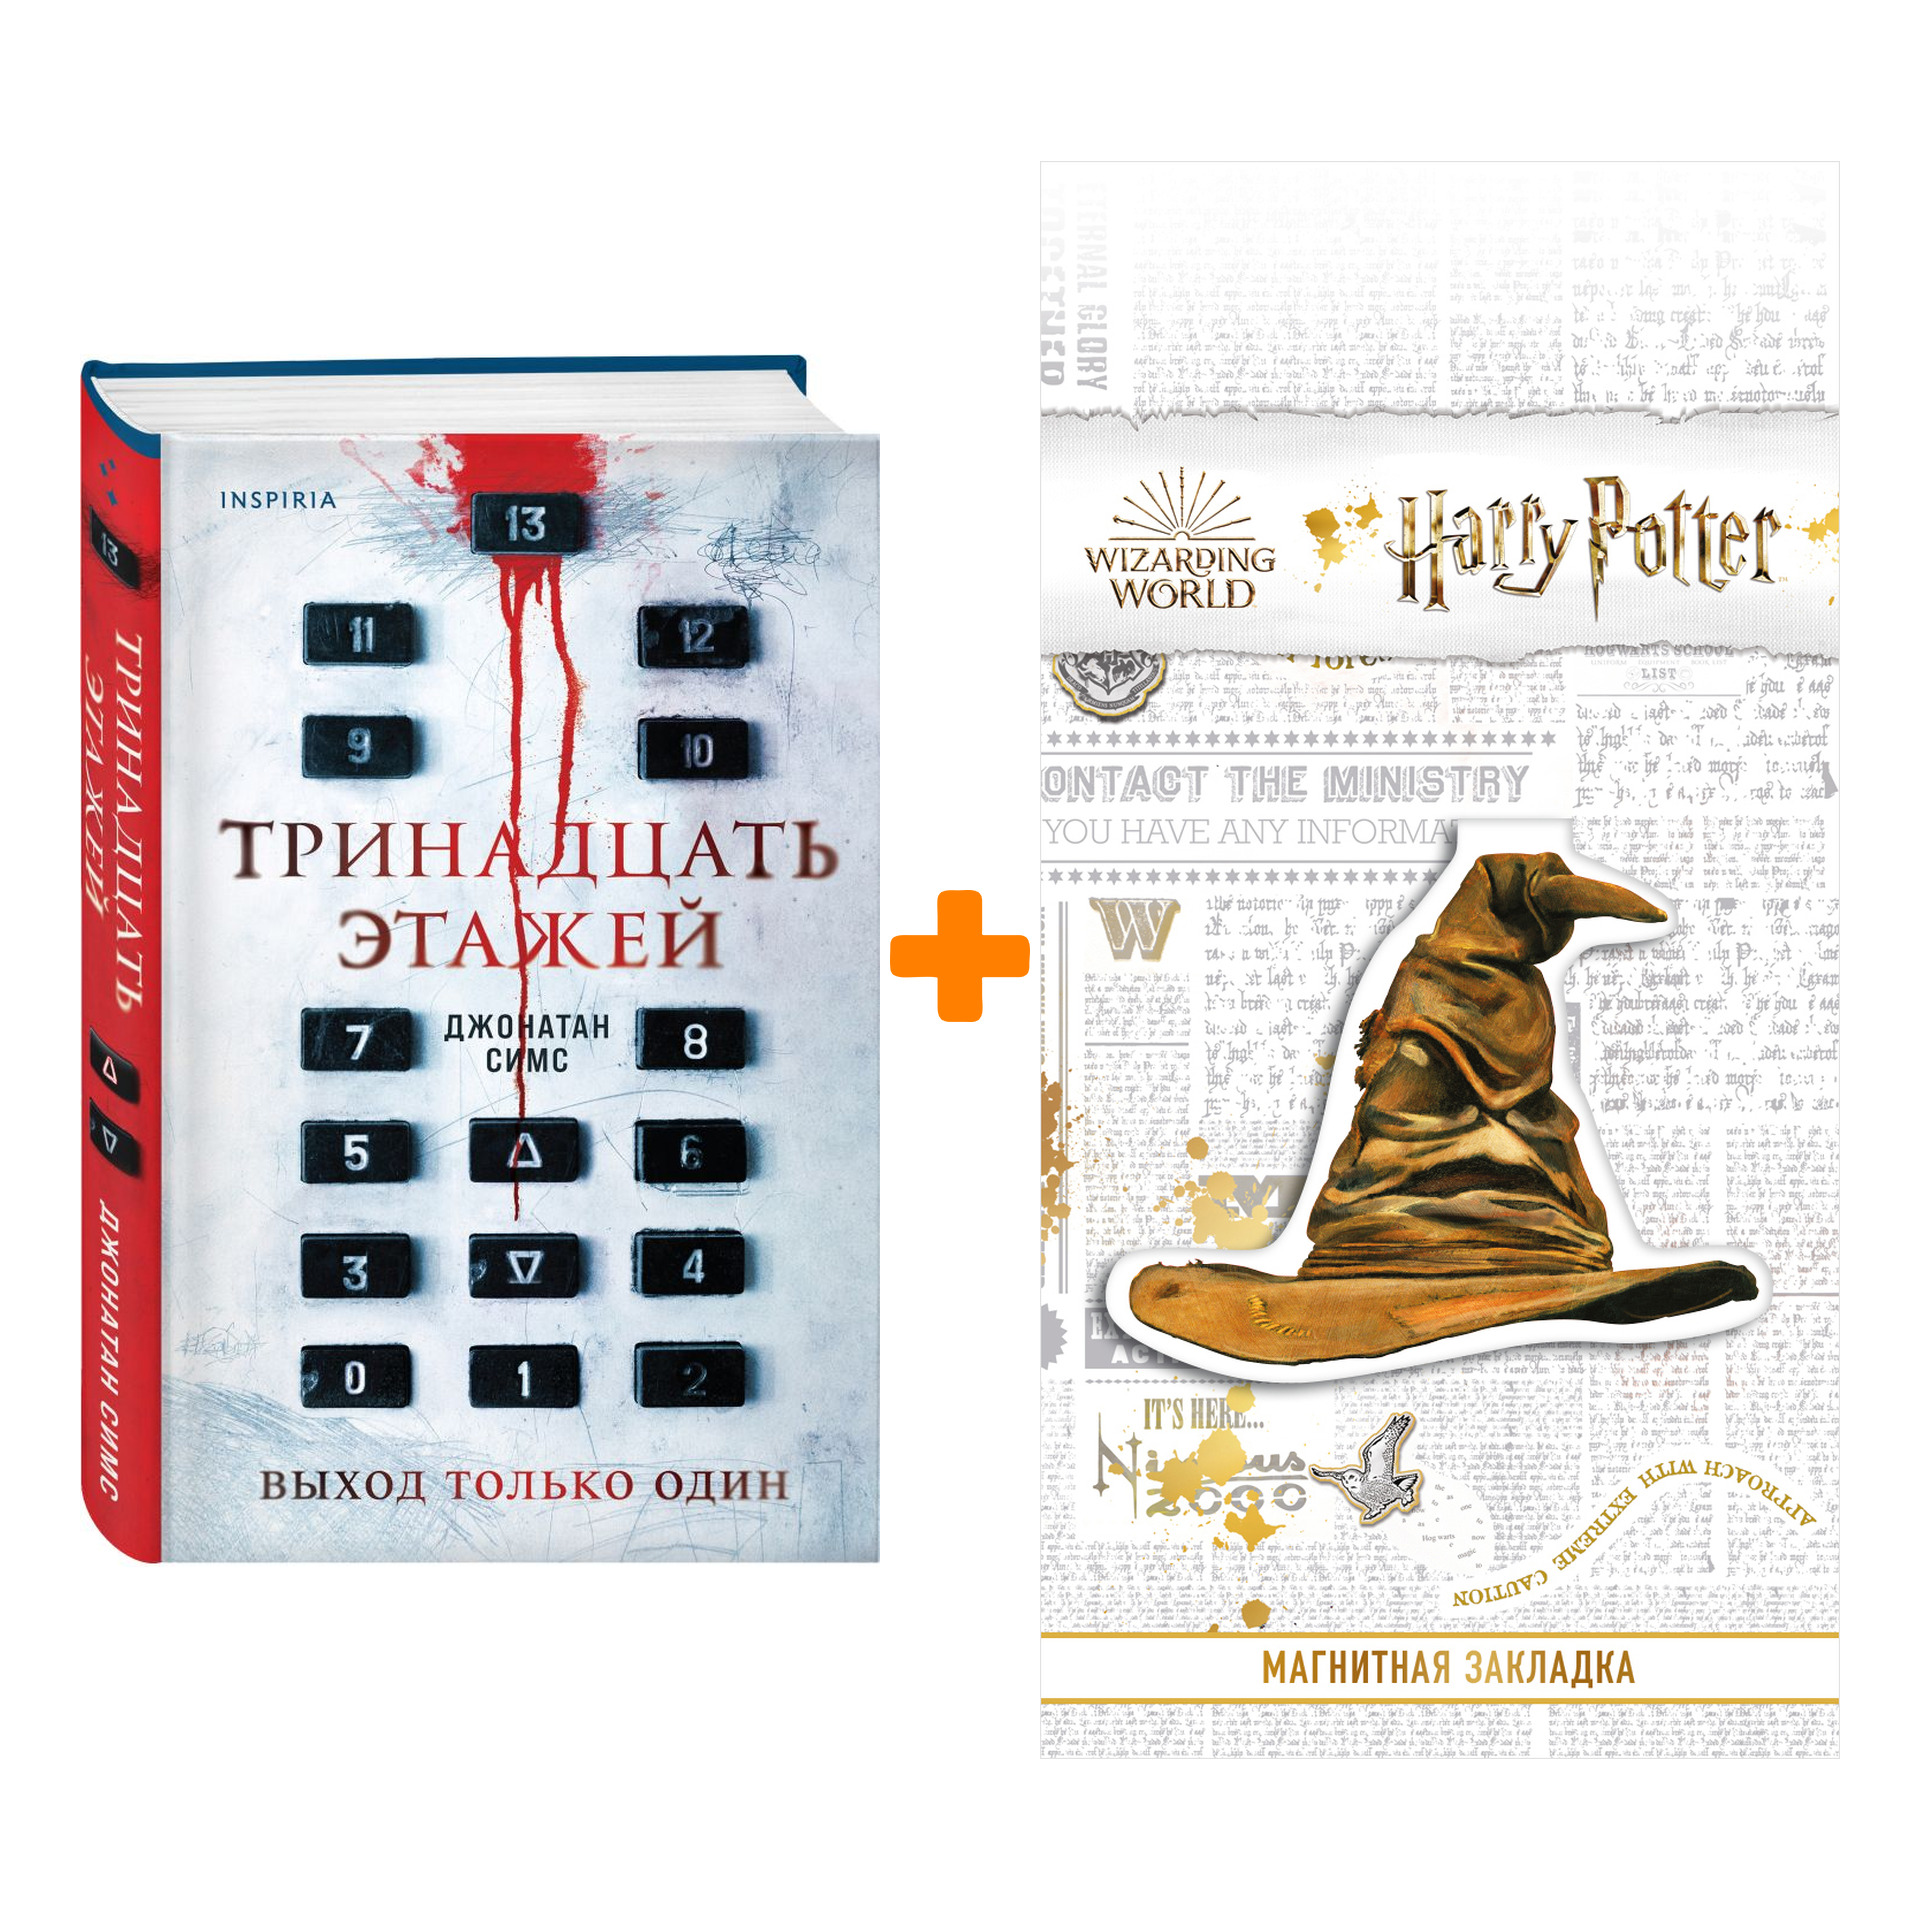 Набор Тринадцать этажей. Джонатан Симс + Закладка Harry Potter Распределяющая шляпа магнитная